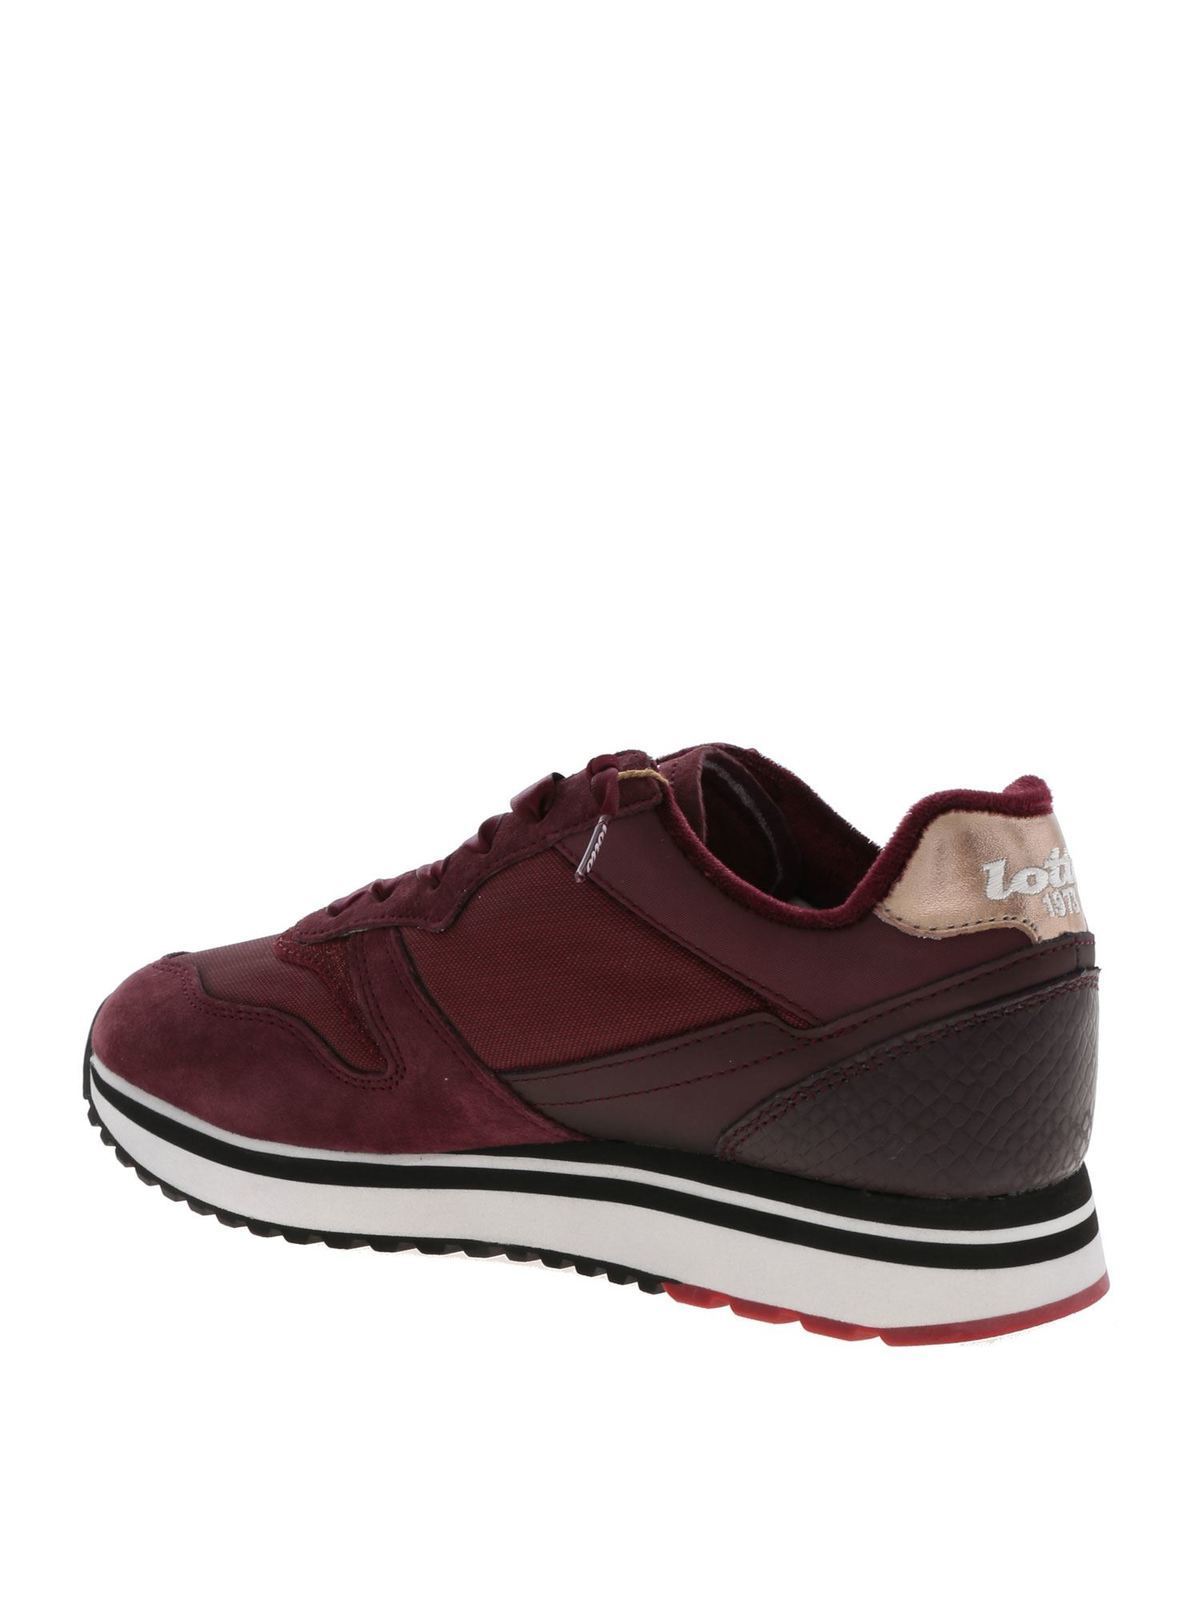 Trainers Lotto Leggenda - Slice sneakers in wine color - 2130875QF